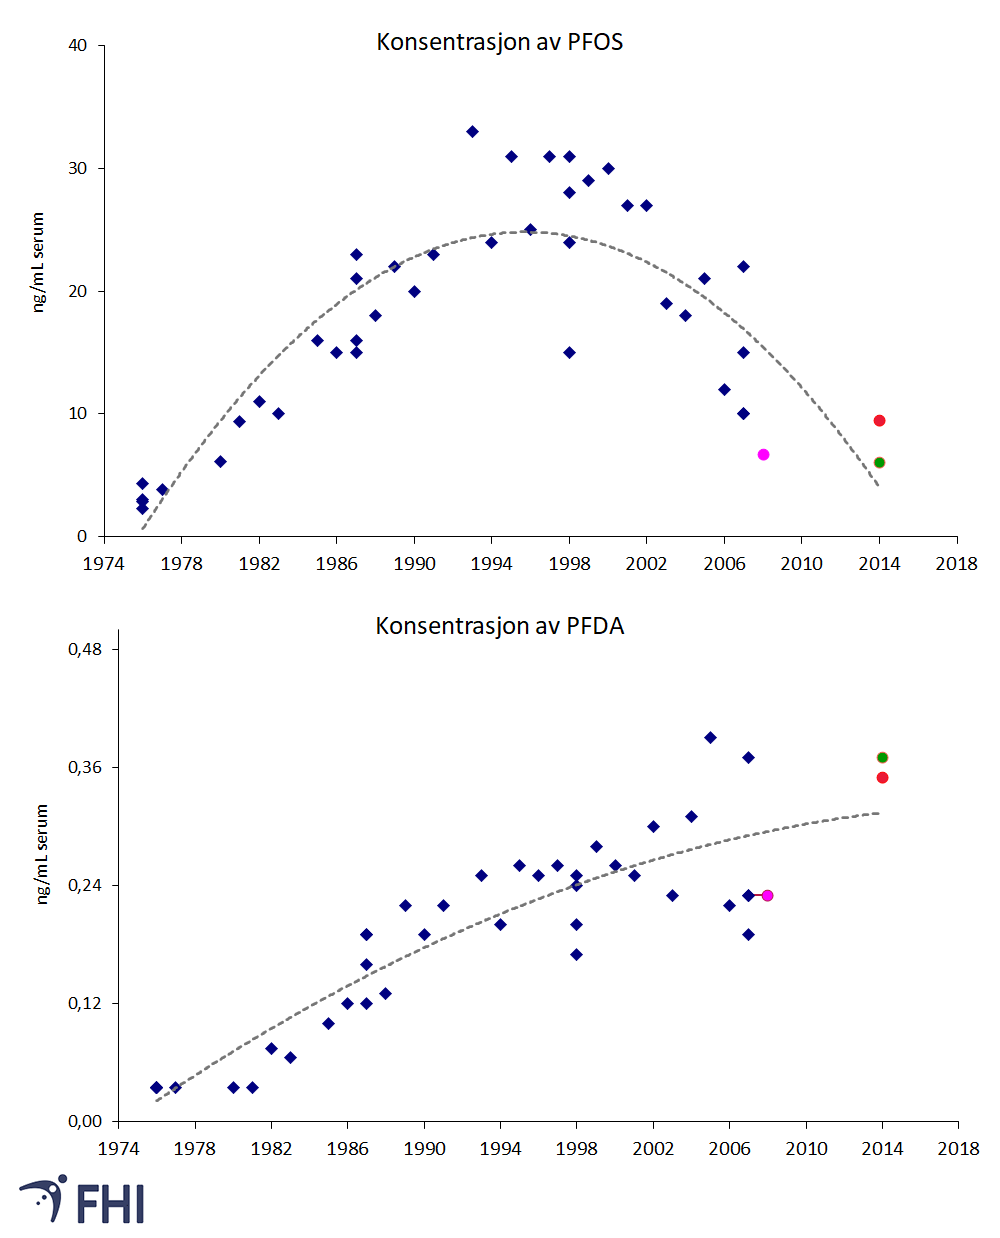 Figur 3: Konsentrasjon av to PFAS i blodprøver fra Norge; perfluoroktan sulfonat (PFOS) og perfluordekanoat (PFDA). Prøvene er tatt i perioden 1976 til 2014. Datapunkter i blått er samleprøver fra menn 40-50 år (n≈10 per samleprøve) (Haug, Thomsen, & Becher, 2009)). Datapunkt i rosa er middelverdien (median) for kvinner (n=41) i alderen 25-46 år (Haug, 2011). Datapunkter i rødt og grønt er middelverdier for henholdsvis menn (n=16) og kvinner (n=45) i alderen 20-66 år (Poothong, Thomsen, Padilla-Sanchez, Papadopoulou, & Haug, 2017). Stiplede grå linjer illustrerer trenden i målingene i perioden. 